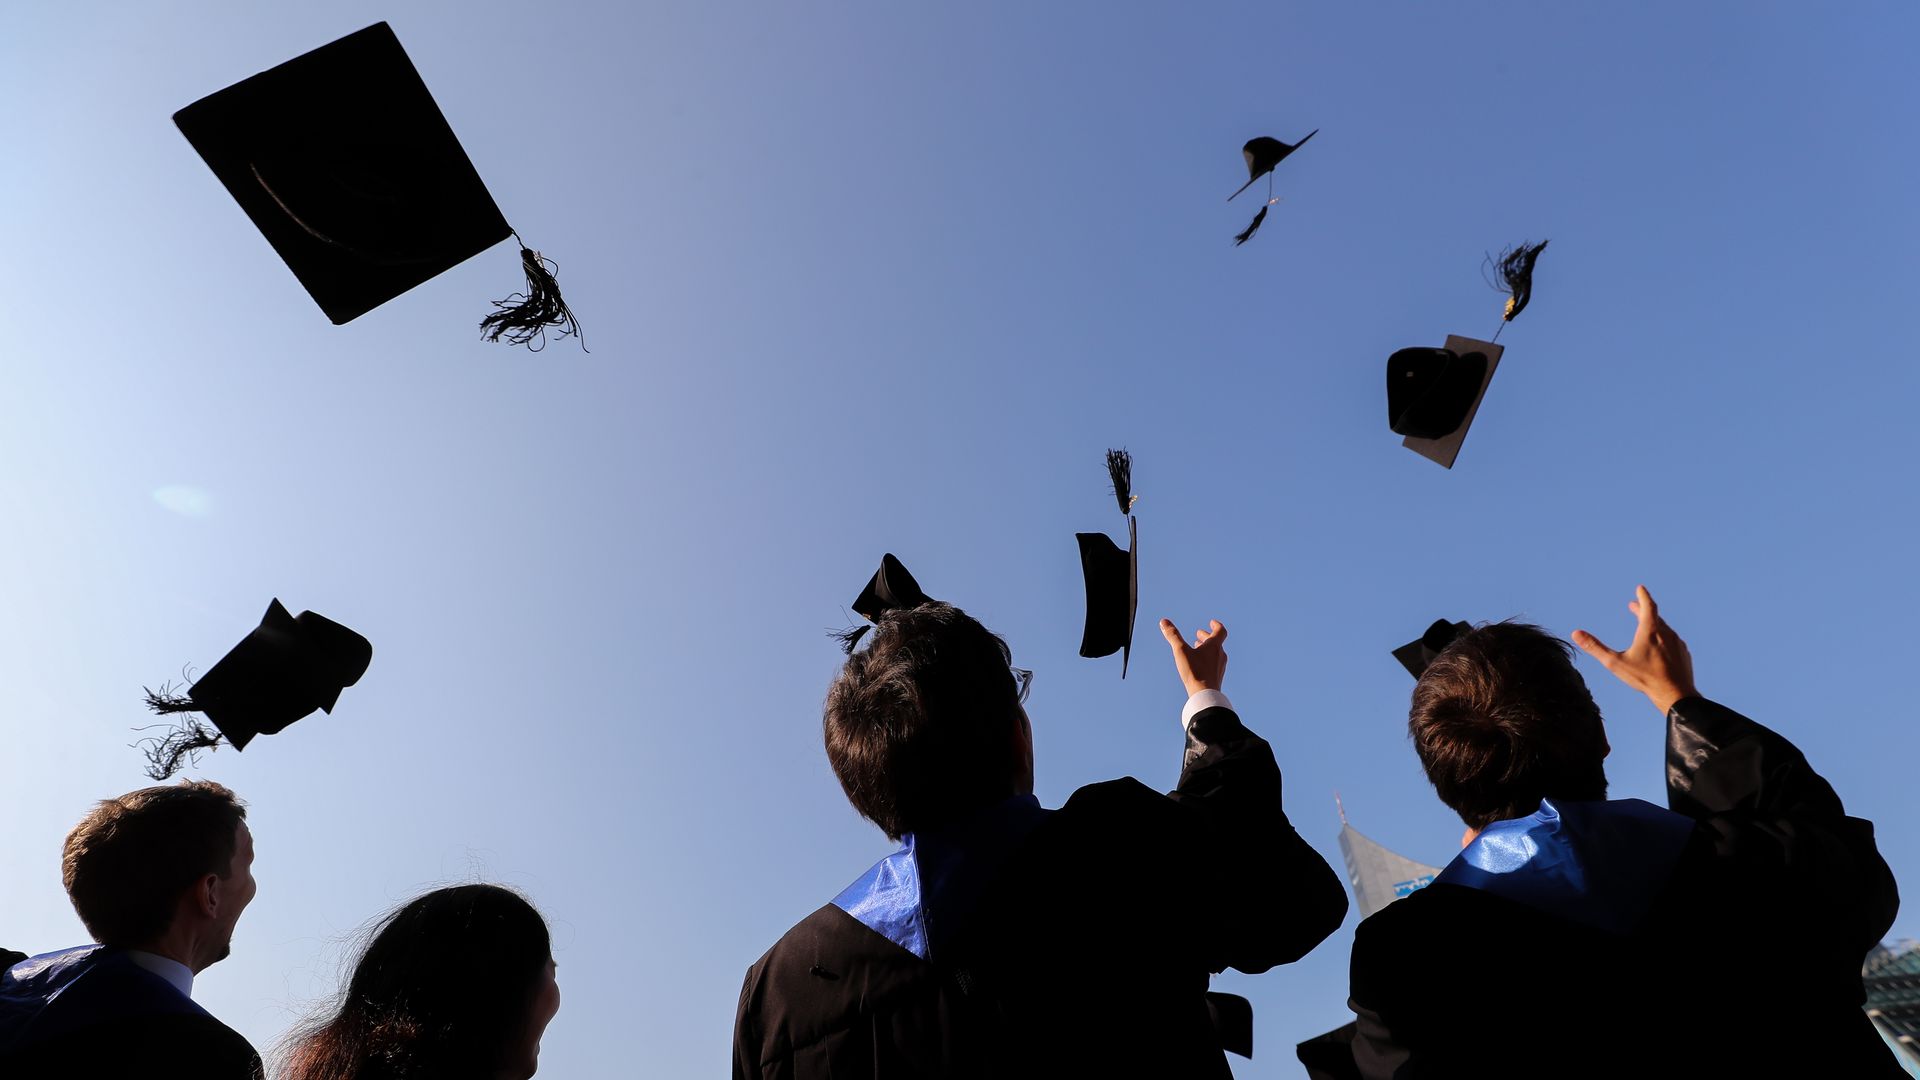 College graduates throwing caps in the air